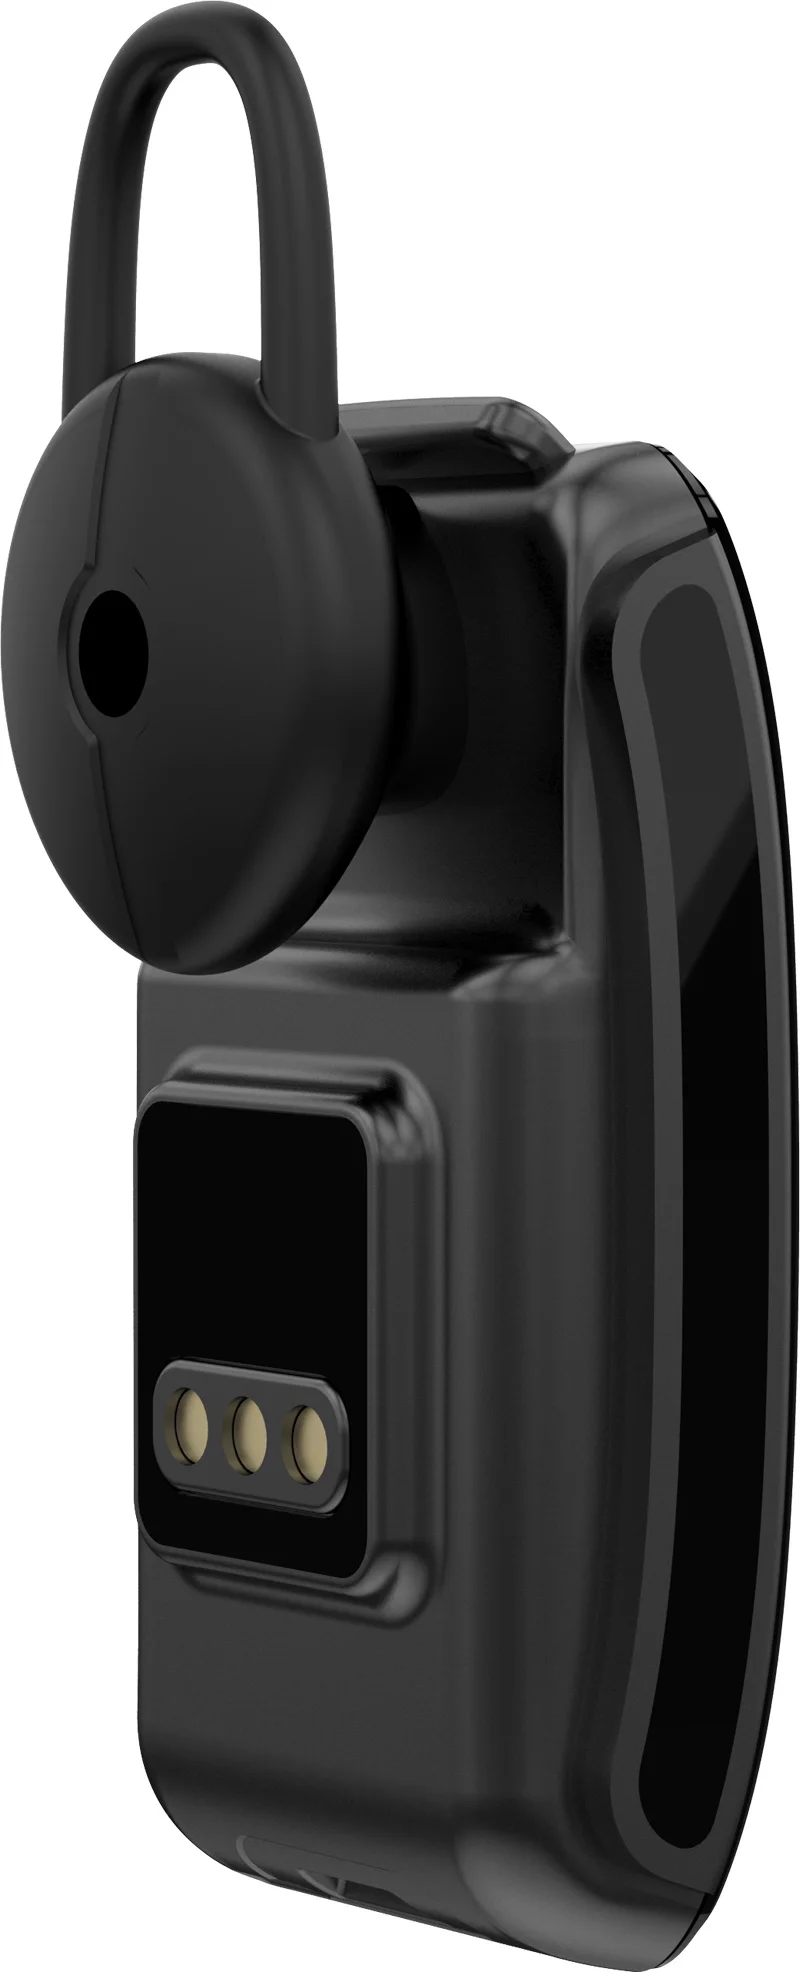 B31 смарт-телефон браслет Фитнес трекер монитор сердечного ритма Bluetooth наушники смарт-браслет для IOS Android говорить браслет